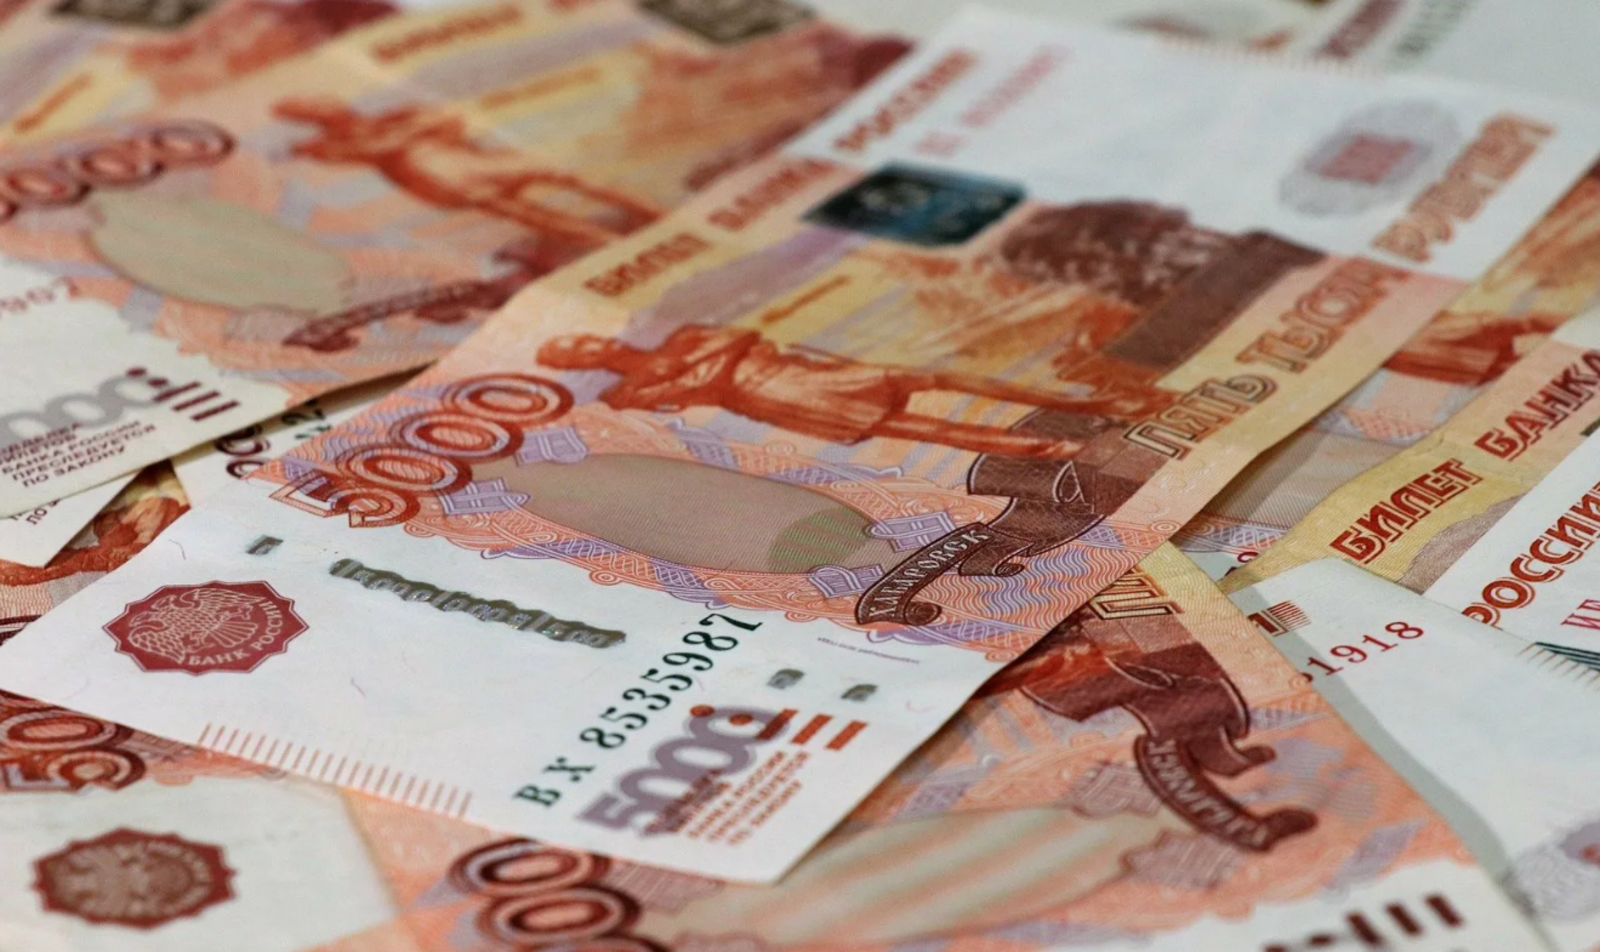 Жители Башкортостана в возрасте до 25 лет смогут получить федеральные гранты на открытие своего дела